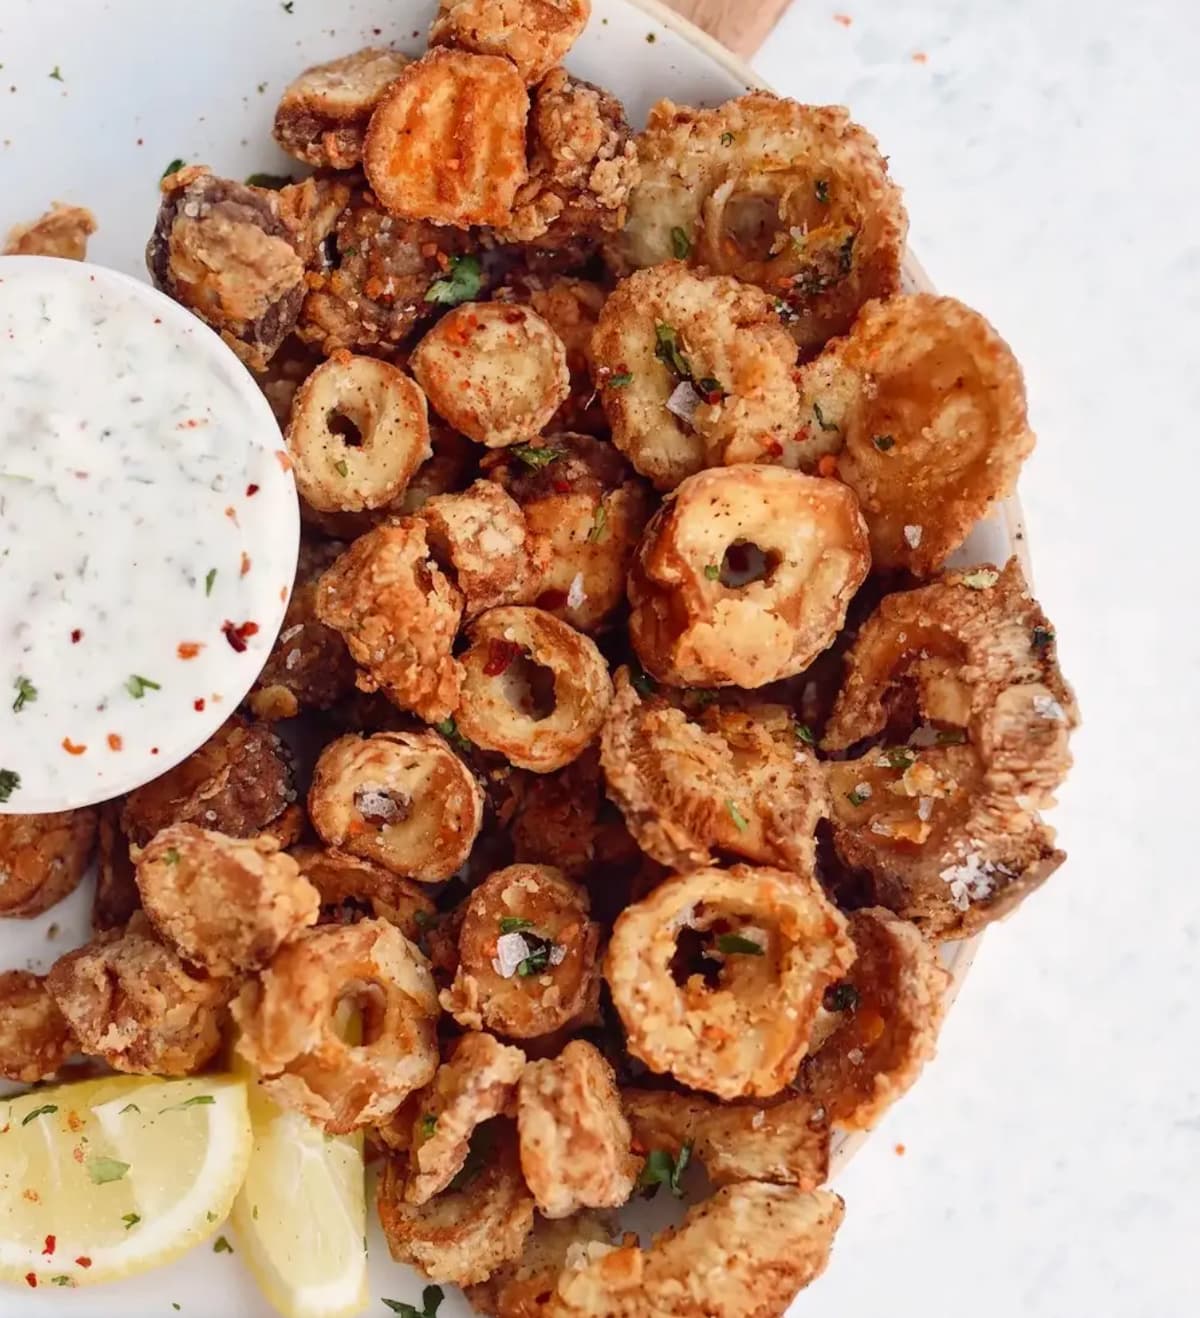 A platter of fried vegan calamari with a creamy dipping sauce.